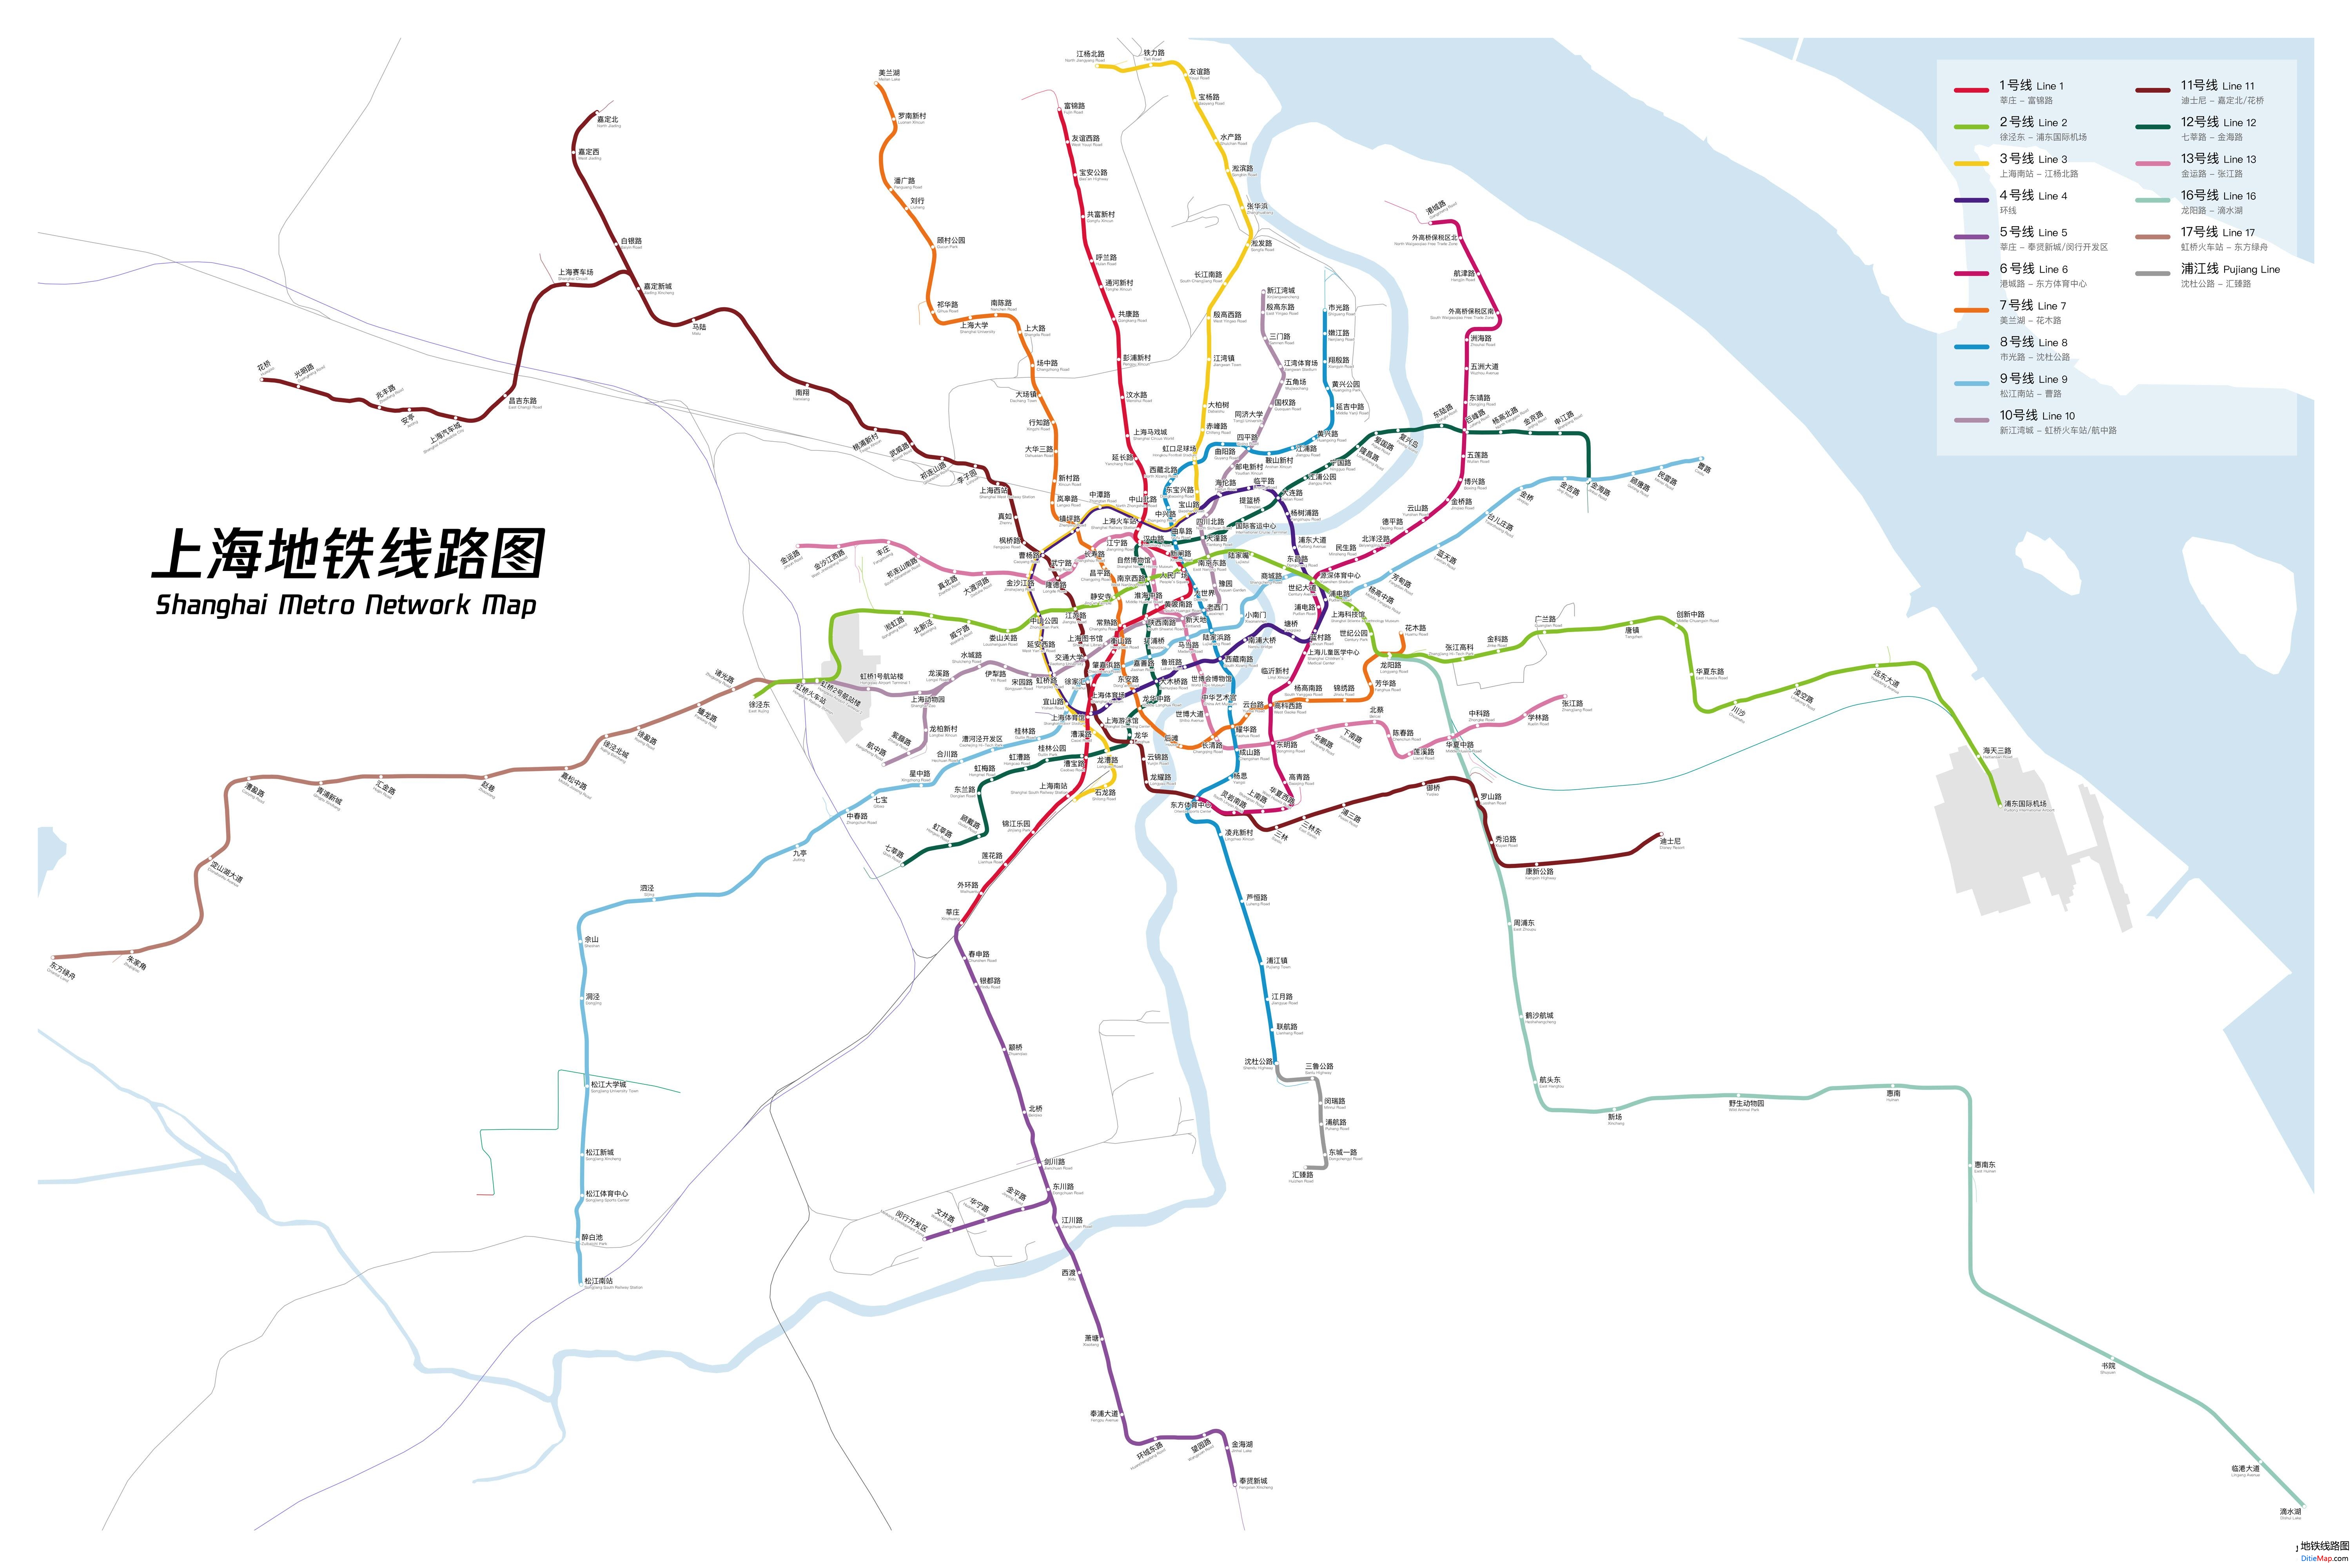 上海地铁线路图 运营时间票价站点 查询下载 上海地铁线路图 上海地铁票价 上海地铁运营时间 上海地铁 上海地铁线路图  第2张